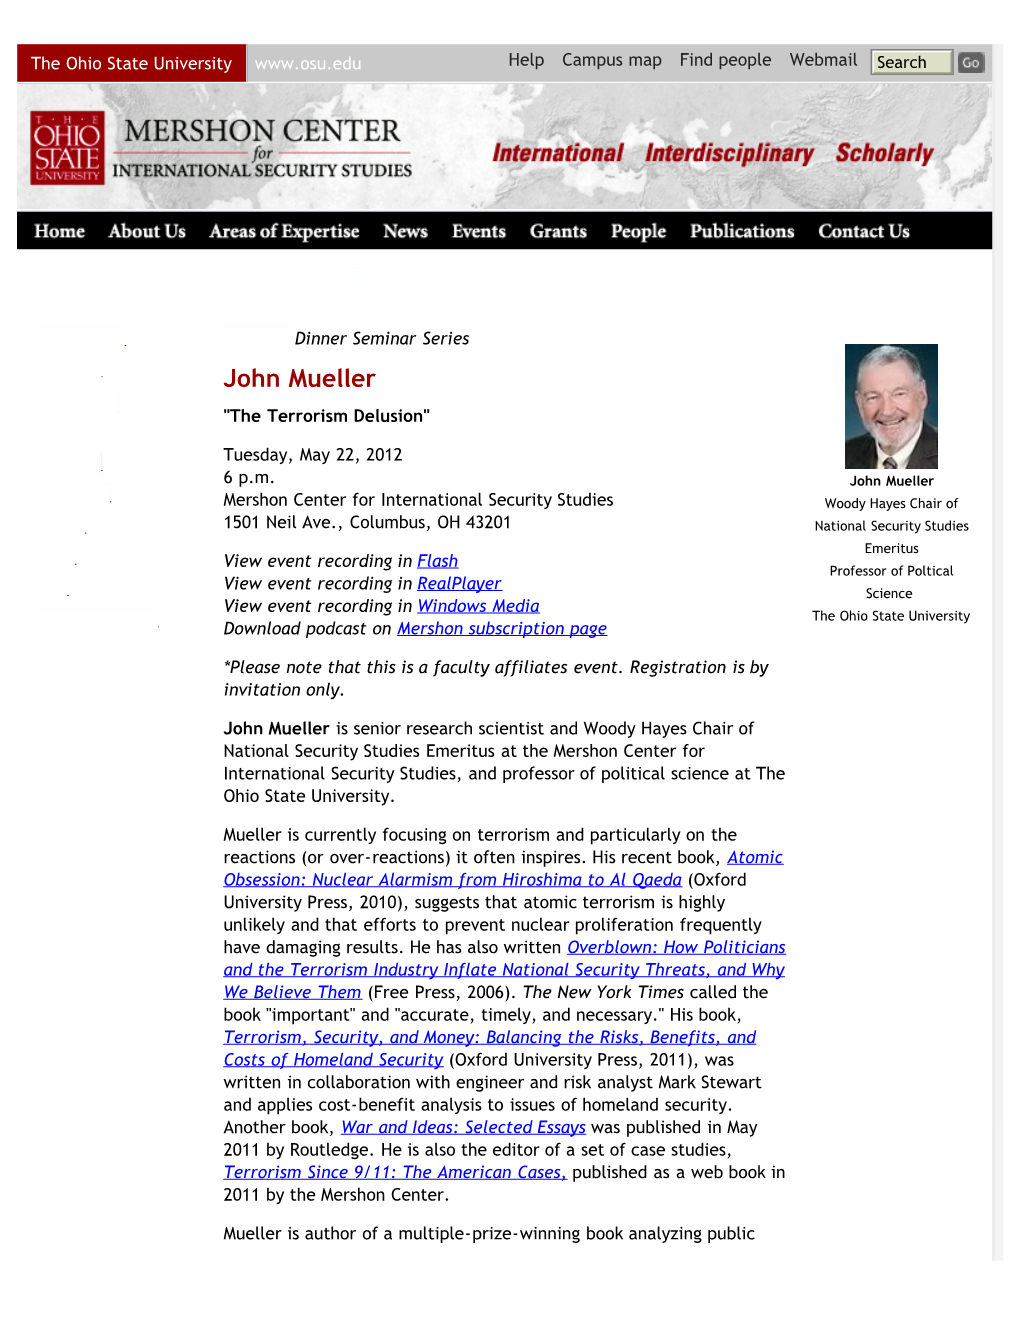 John Mueller | Mershon Center for International Security Studies